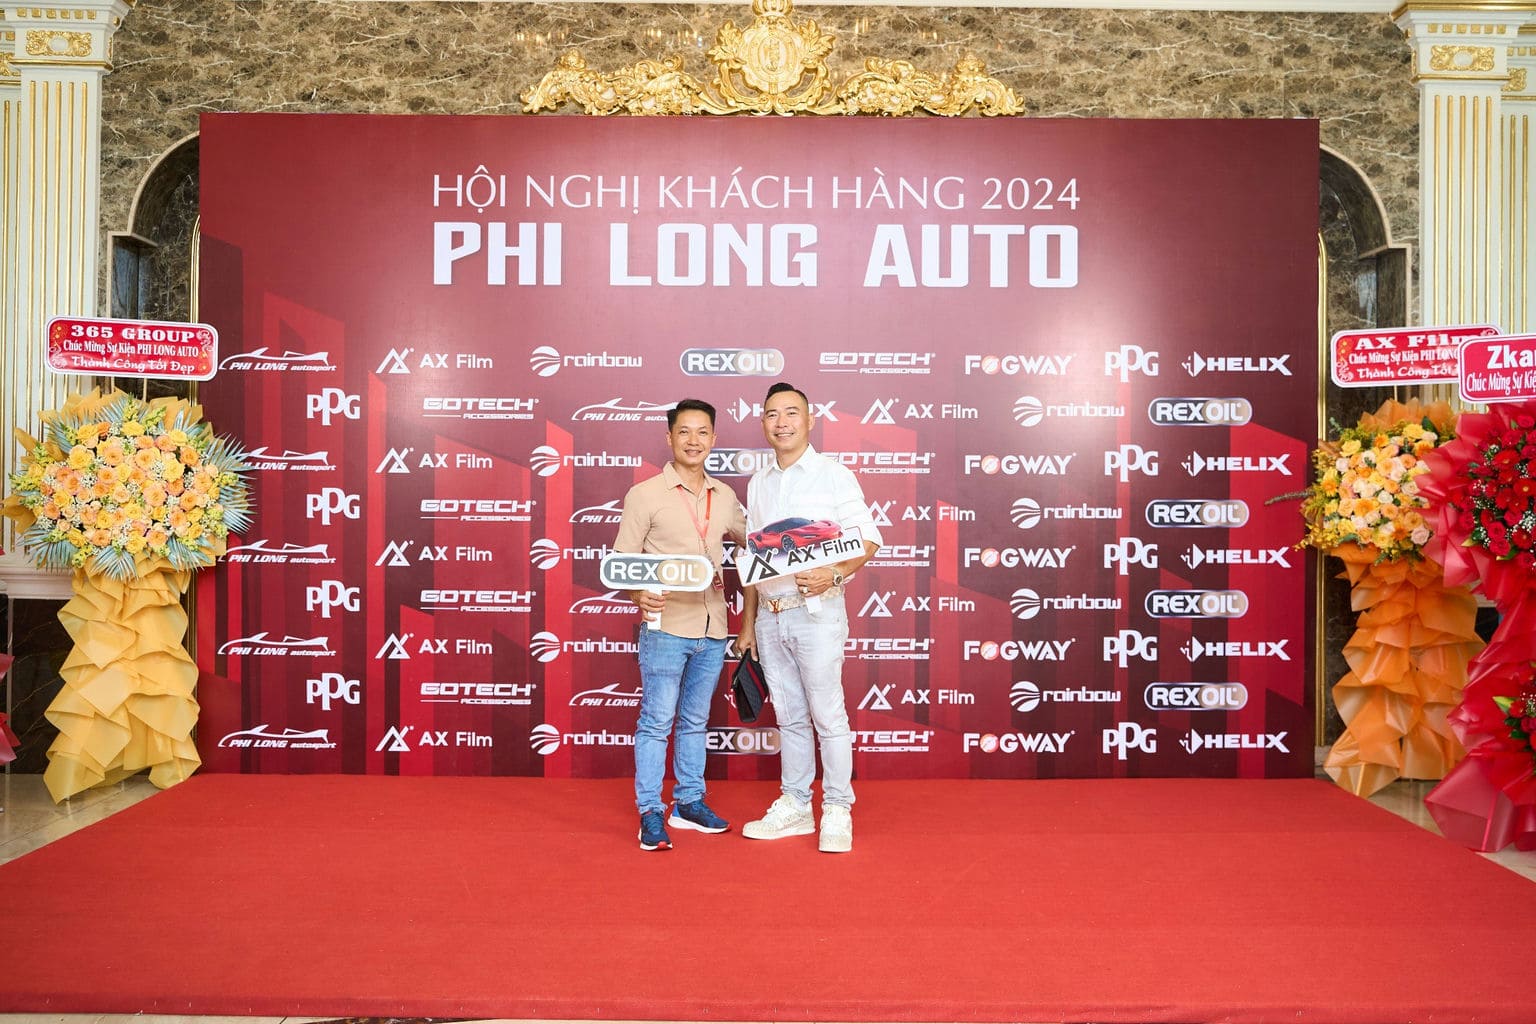 HOI NGHI KHACH HANG PHI LONG AUTO 2024 32 | Phi Long Auto